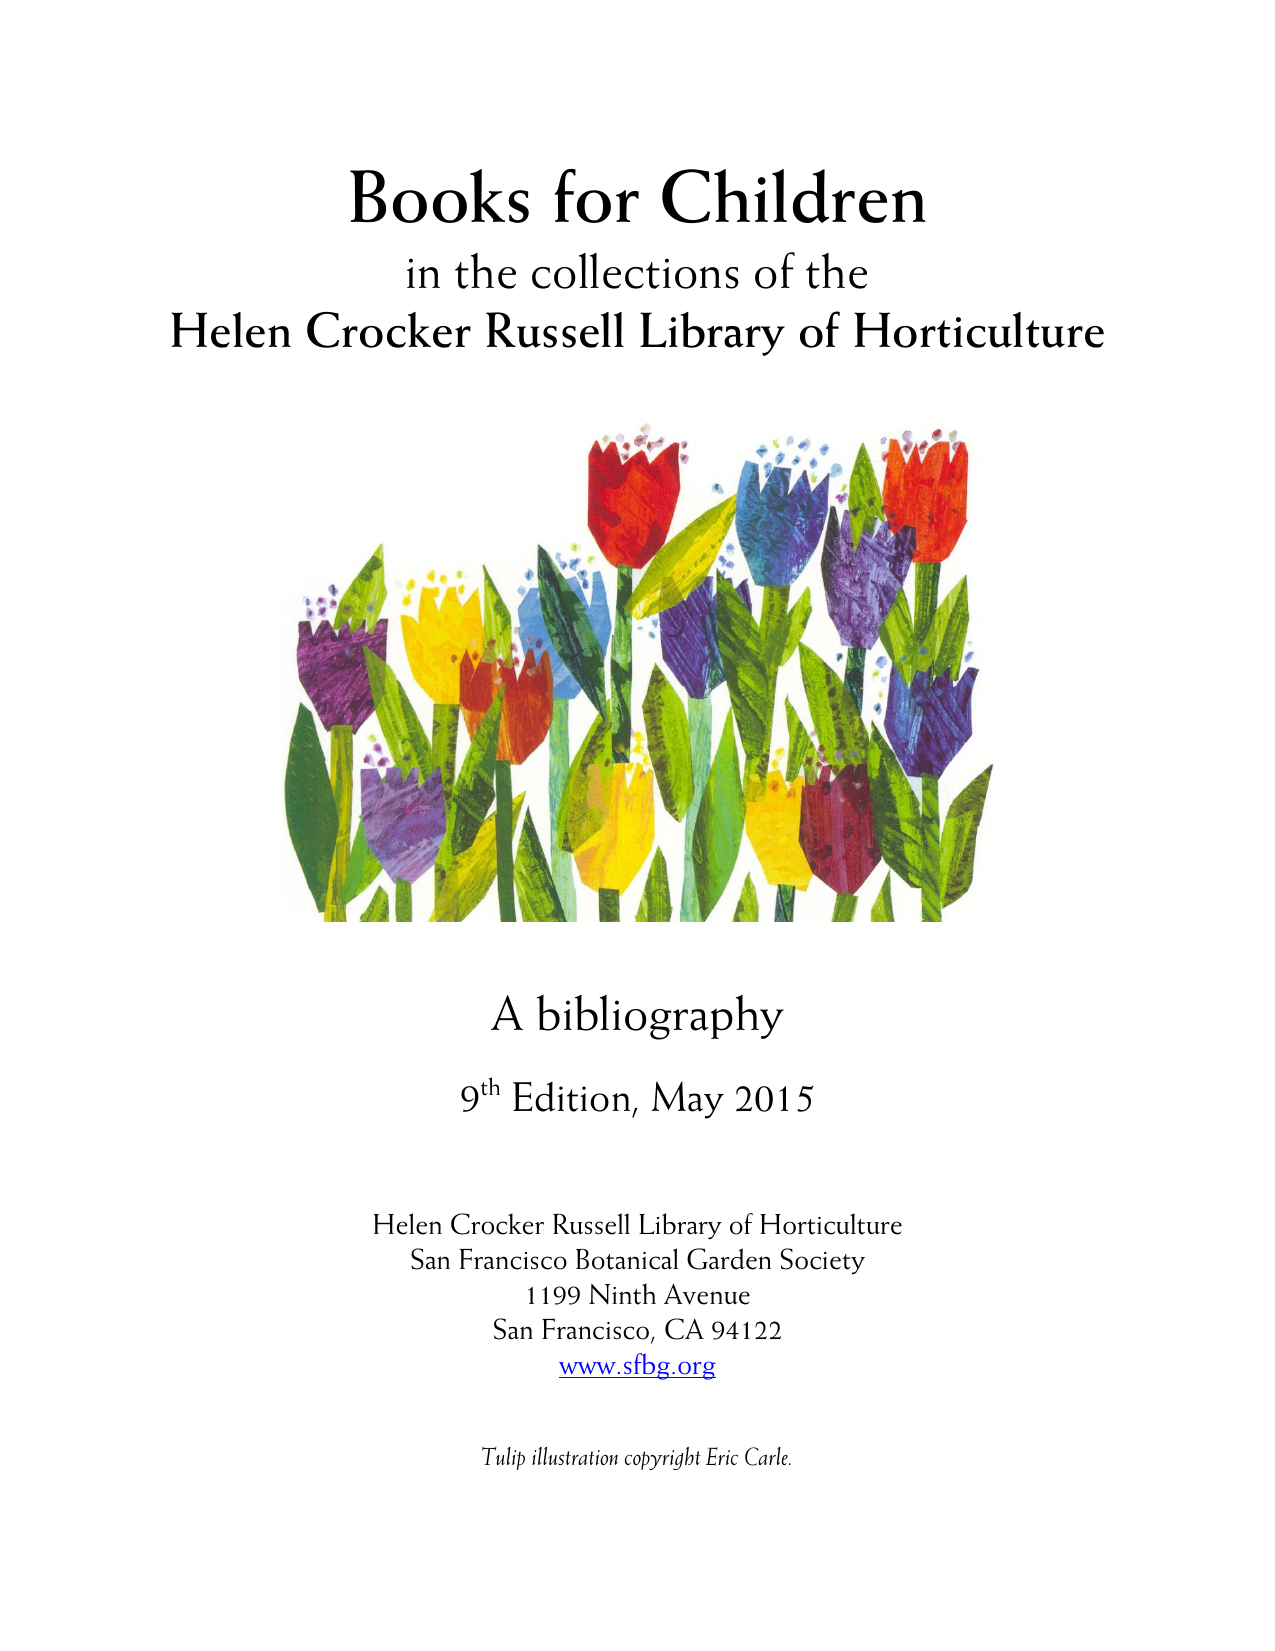 Books for Children - San Francisco Botanical Garden